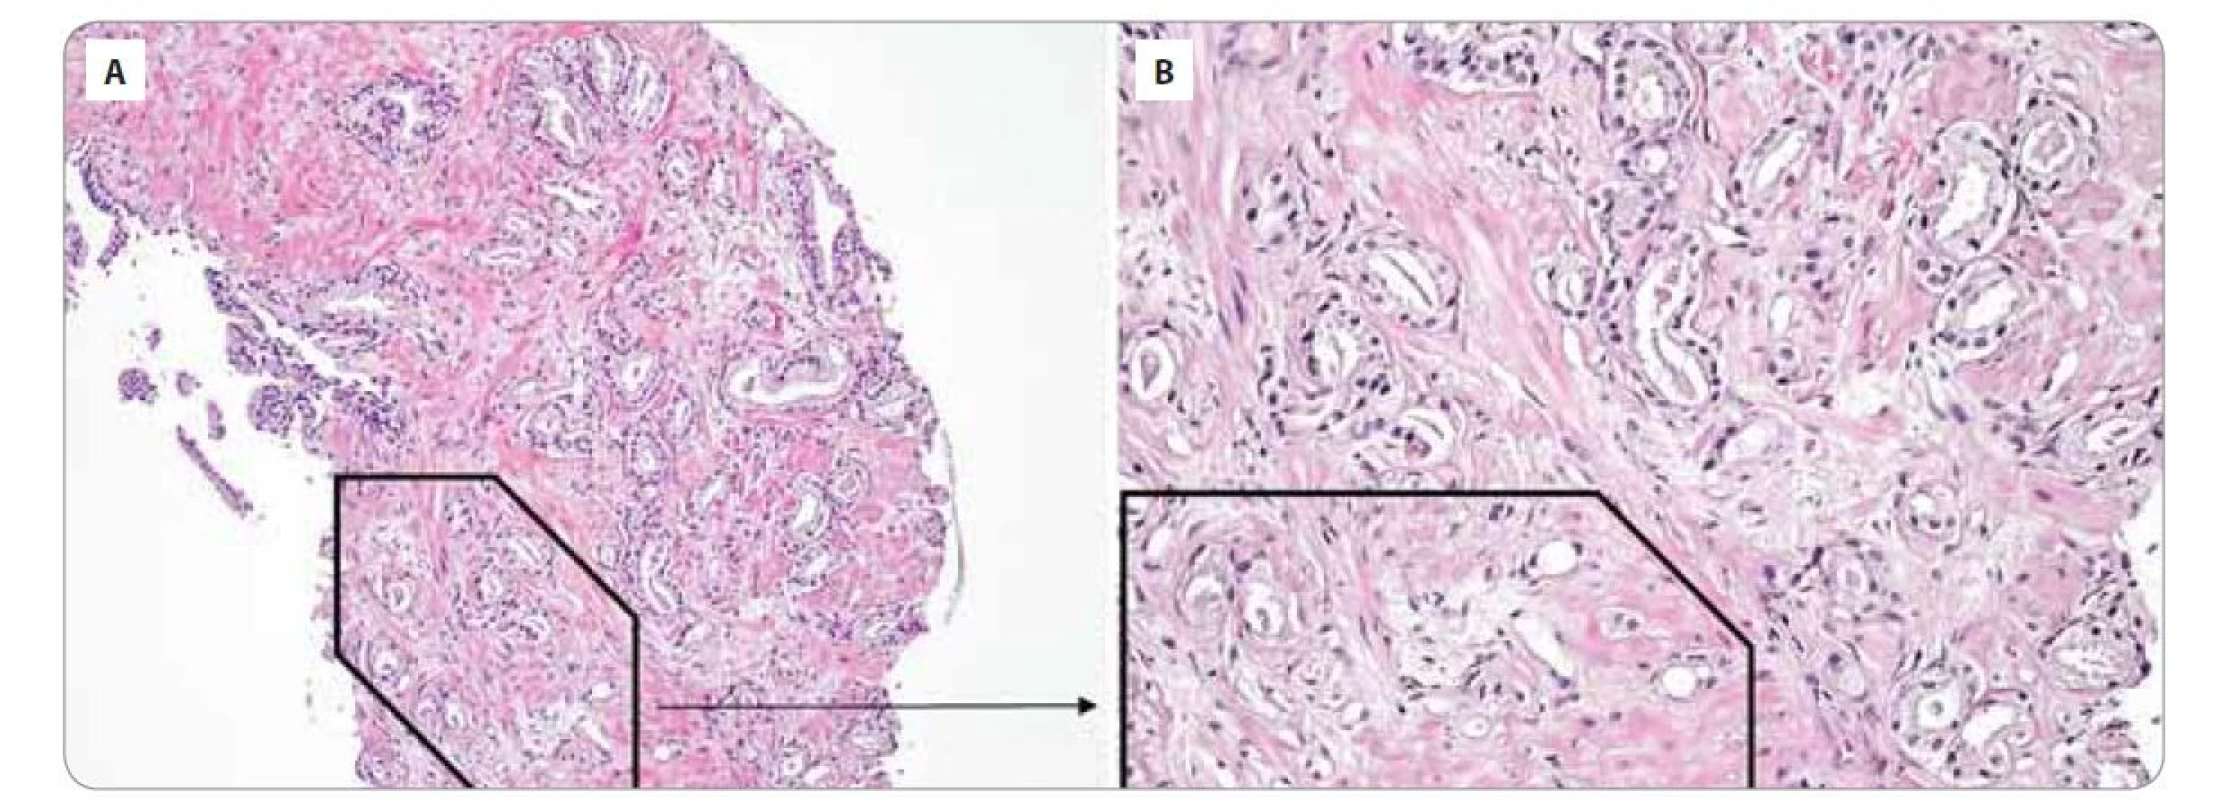 Histologické vyšetření prostaty se semennými váčky prokazující přítomnost acinárního adenokarcinomu prostaty.<br>
Acinární adenokarcinom prostaty, Gleason skóre 7 (3 + 4), grade group 2: převažují izolované nádorové žlázky variabilní velikosti
(Gleason pattern 3) a špatně formované až naznačeně fúzující žlázky (Gleason pattern 4 – černý rámeček). A) Zvětšení 100x; B) zvětšení
200x.